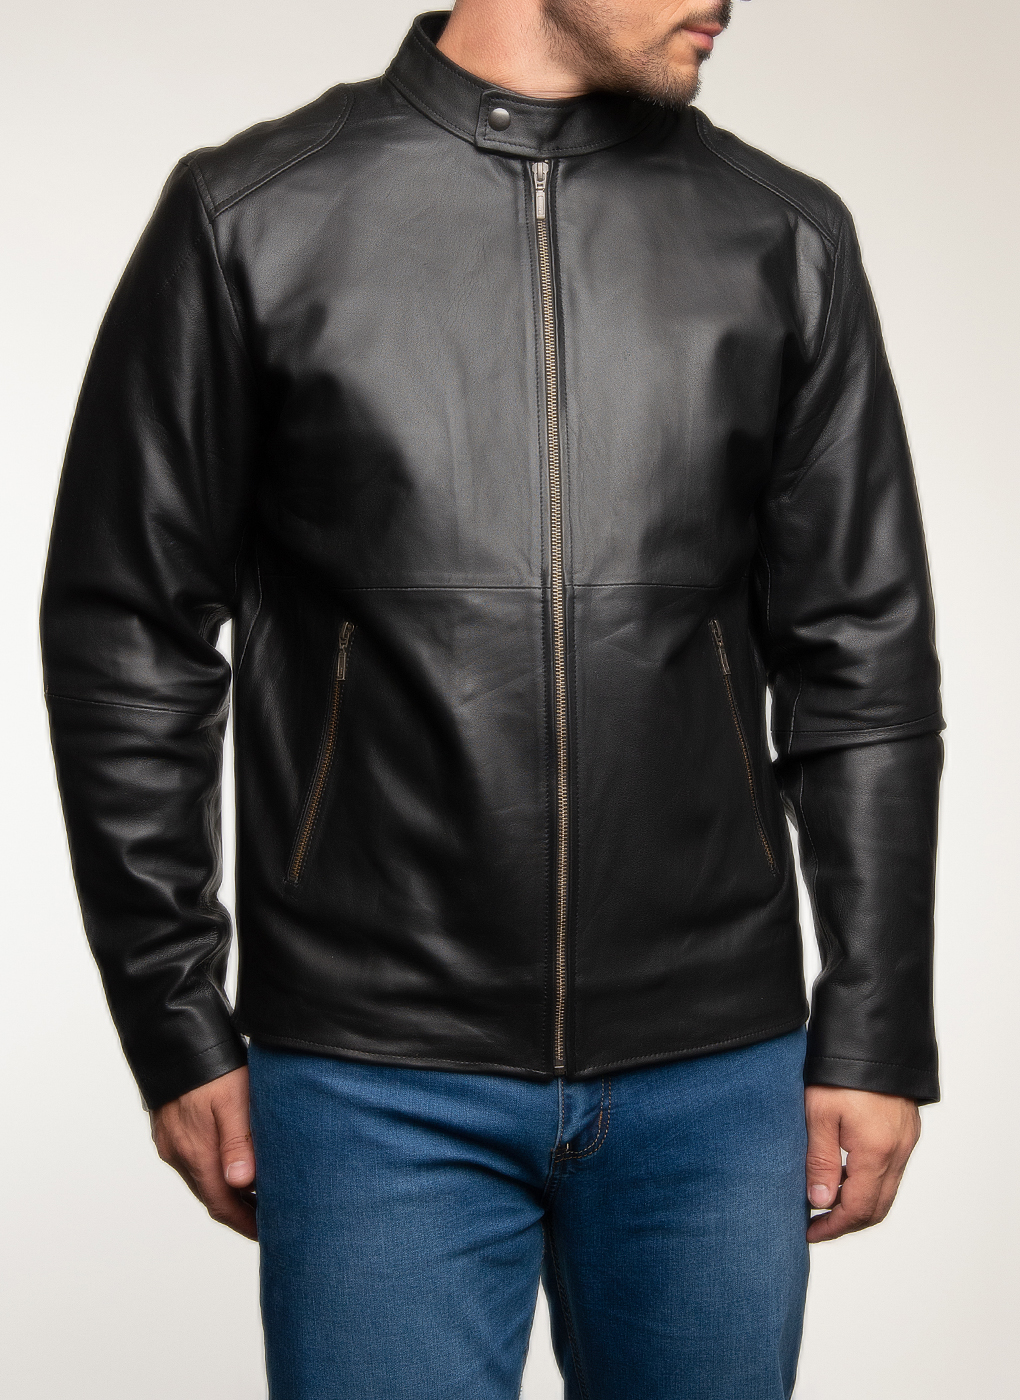 Кожаная куртка мужская Каляев 62652 черная 56 RU